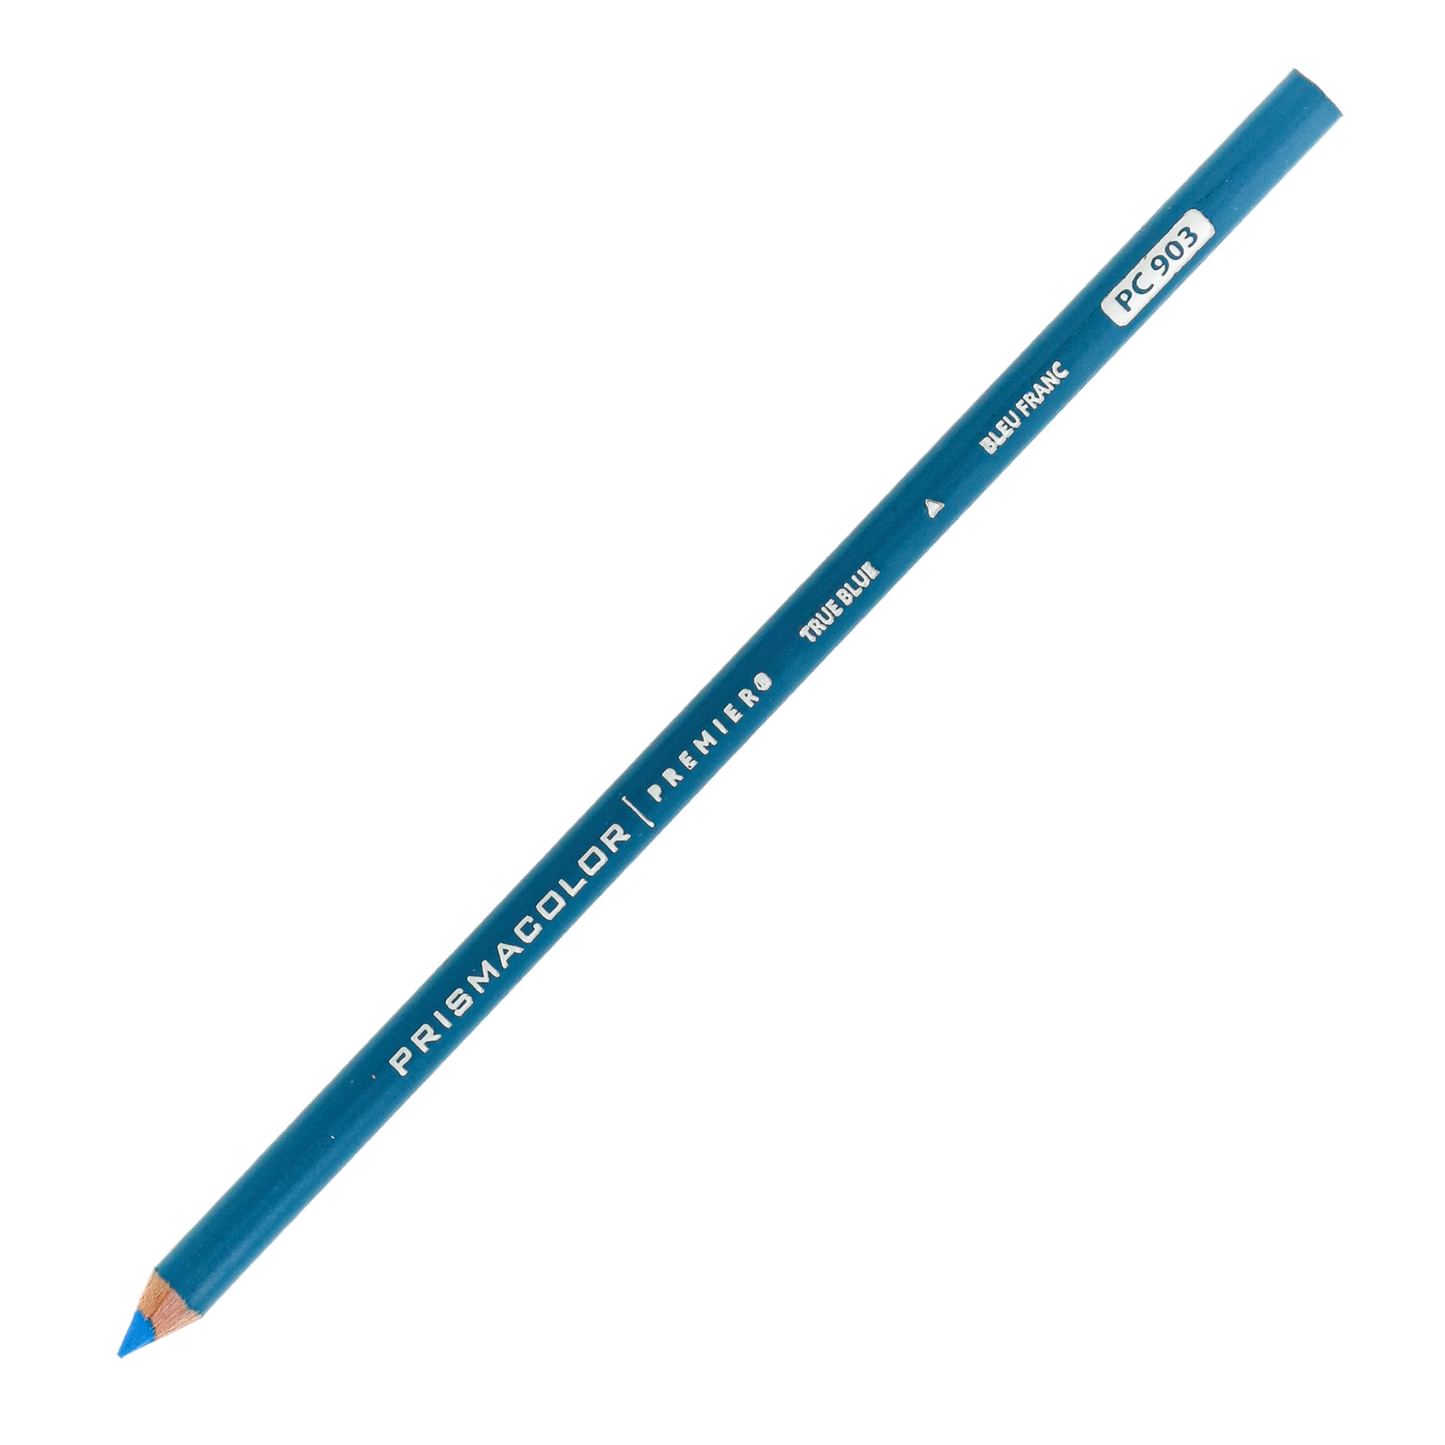 Prismacolor Premier Thick-Core Colored Pencil Set of 12 Colors